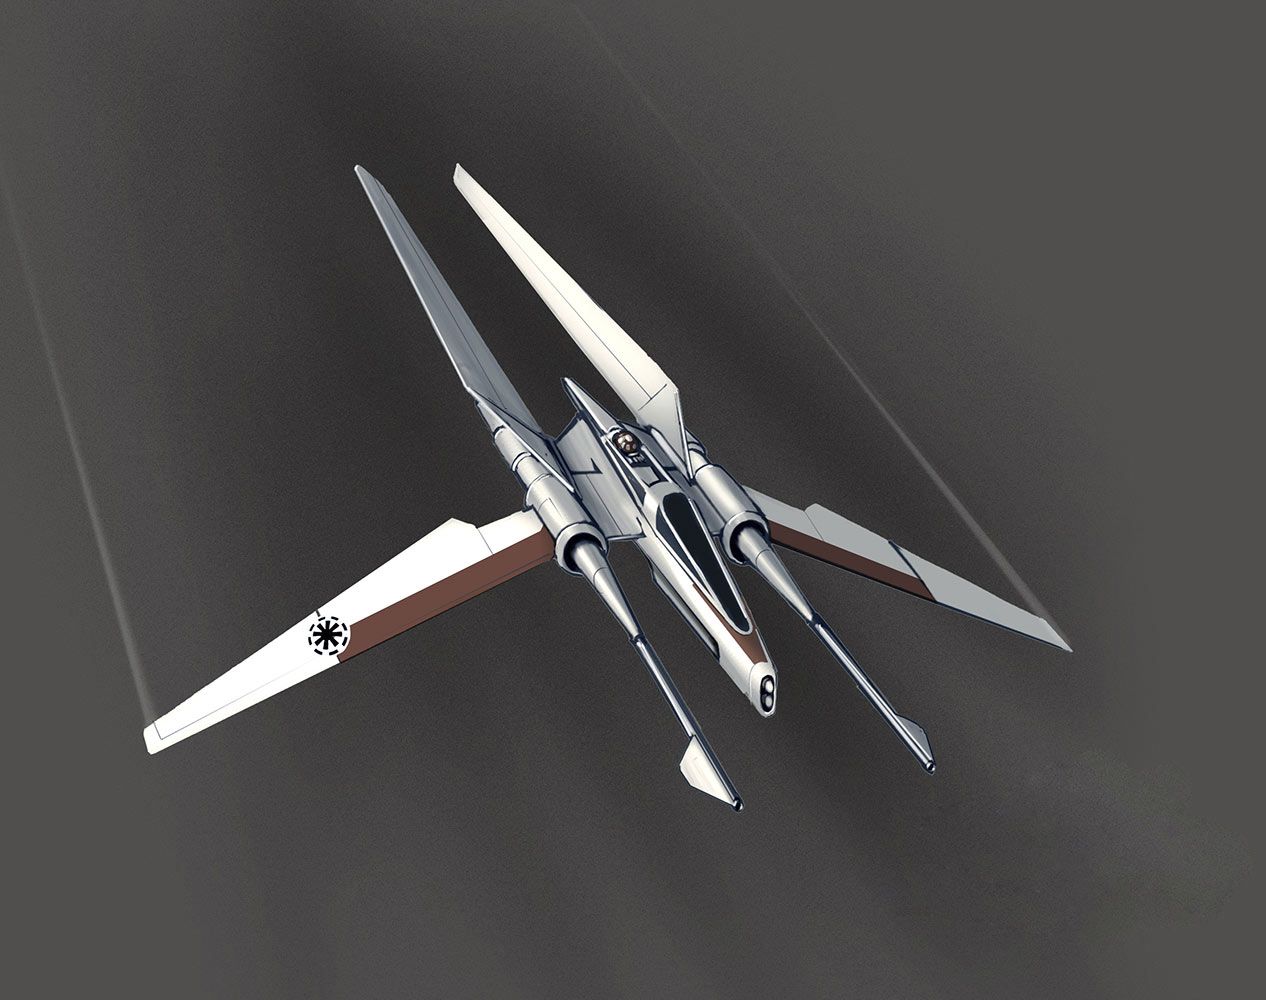 A klónvadászgép korai látványtervéből született a High Republic éra Jedi Vector űrhajójának koncepciója.